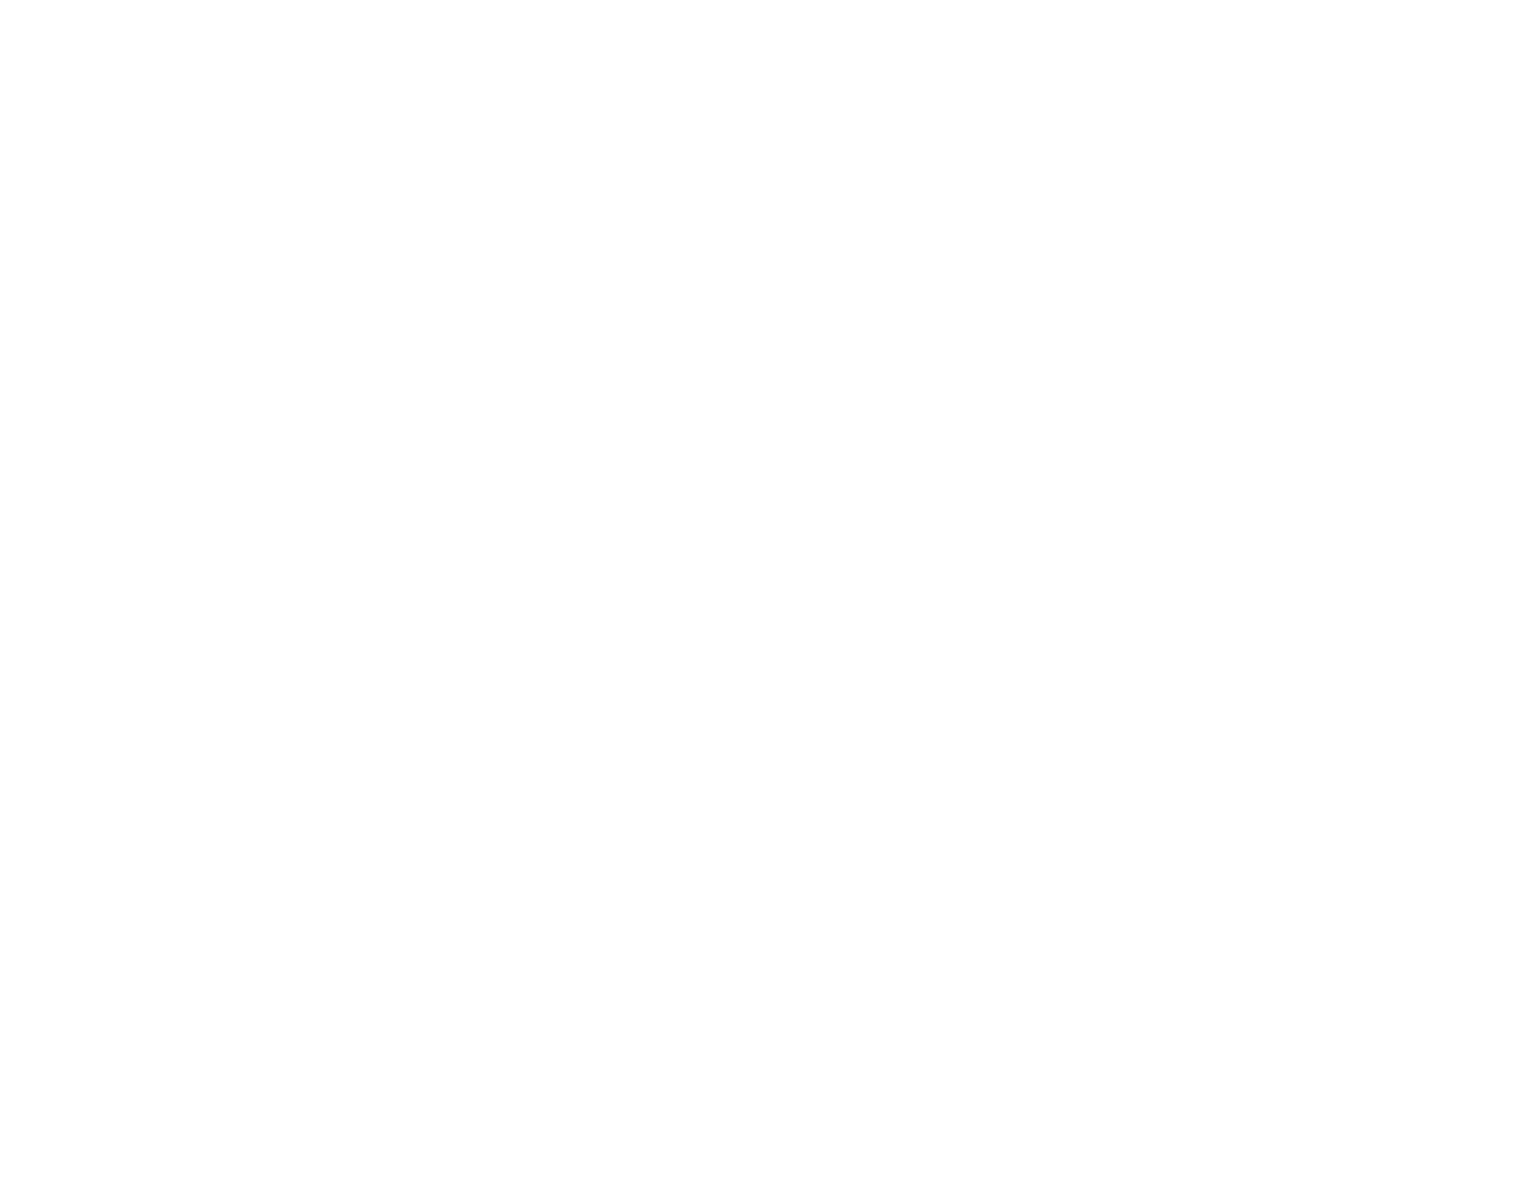 Vienna Airport logo pour fonds sombres (PNG transparent)